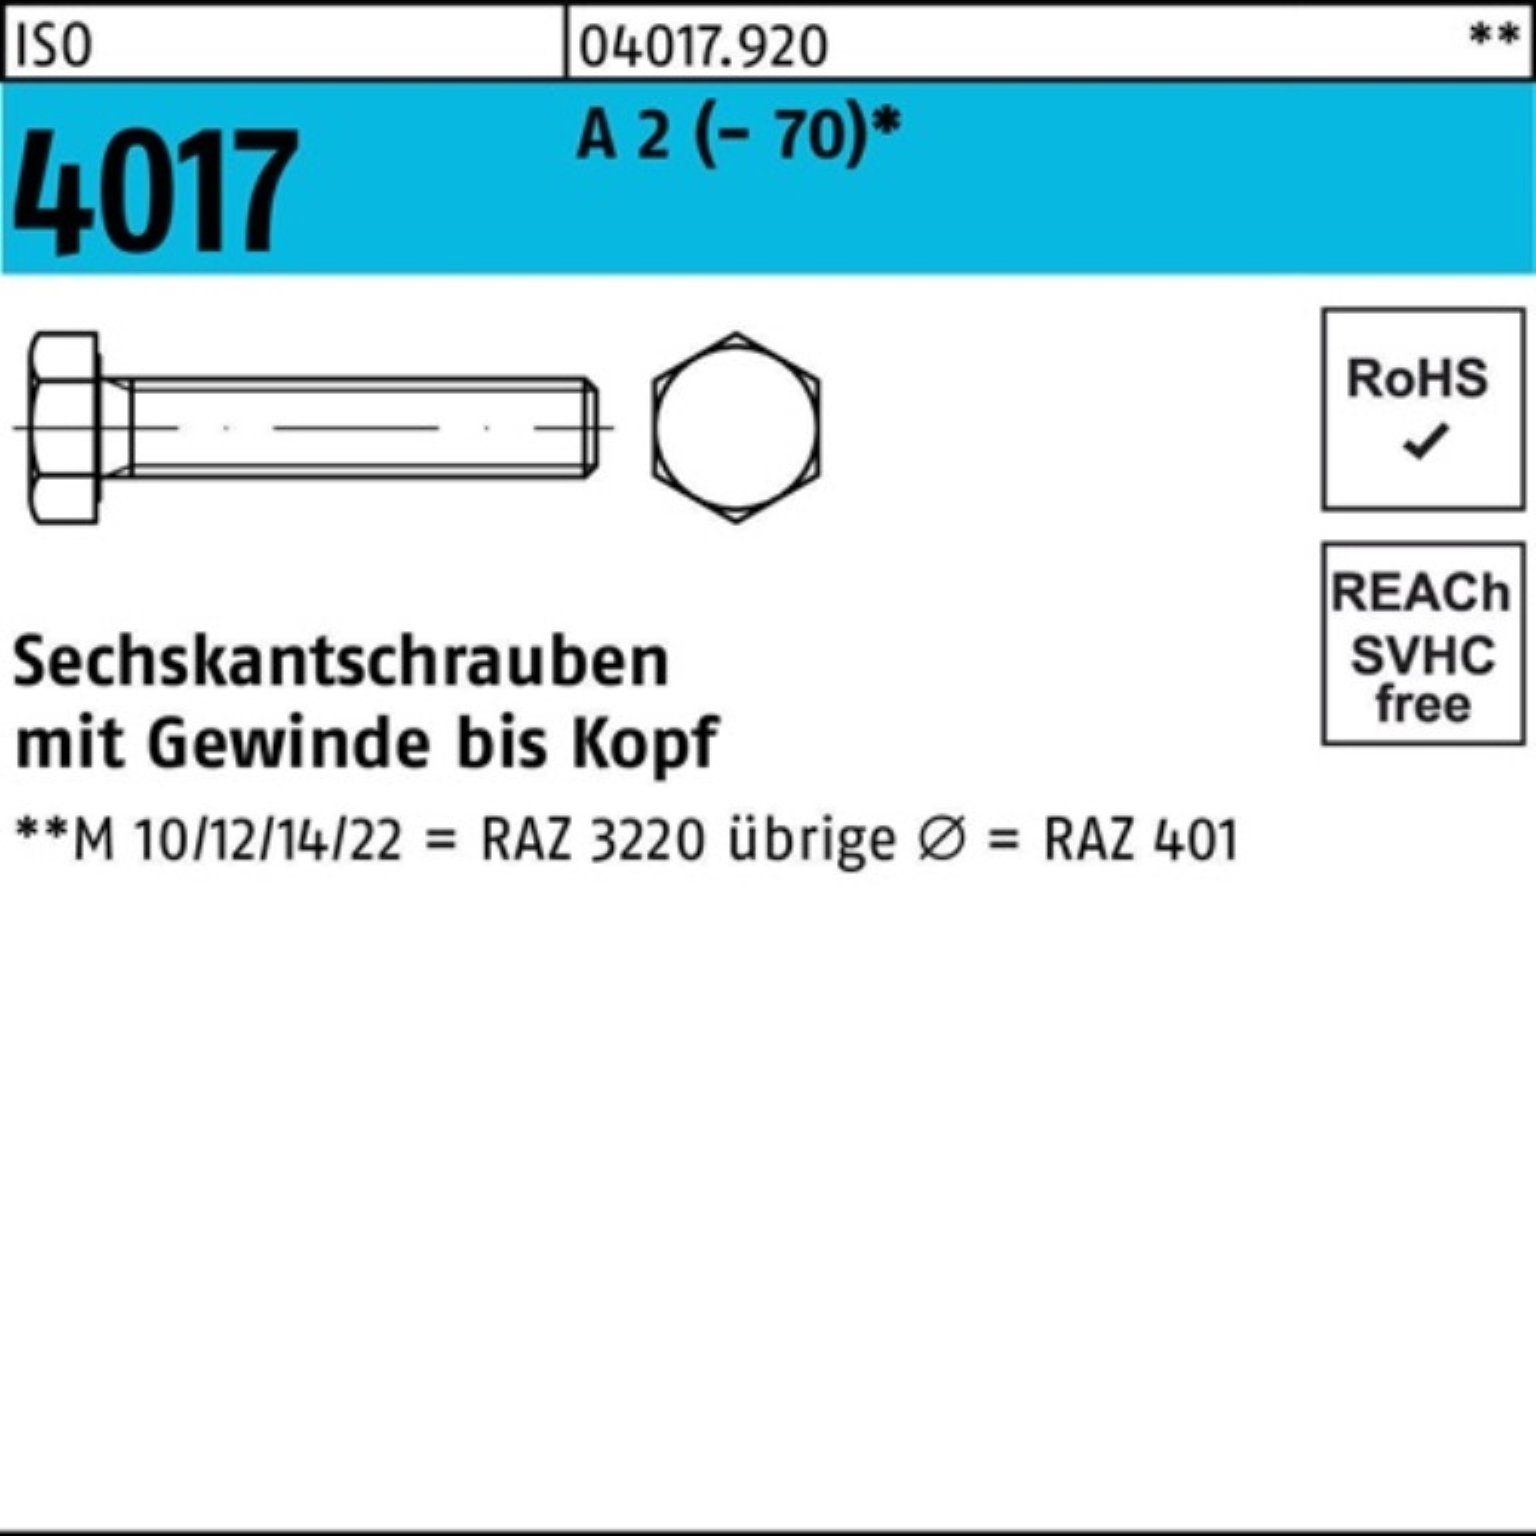 Bufab Stück Sechskantschraube (70) Sechskantschraube A 200er 200 Pack VG 2 22 4017 ISO M5x